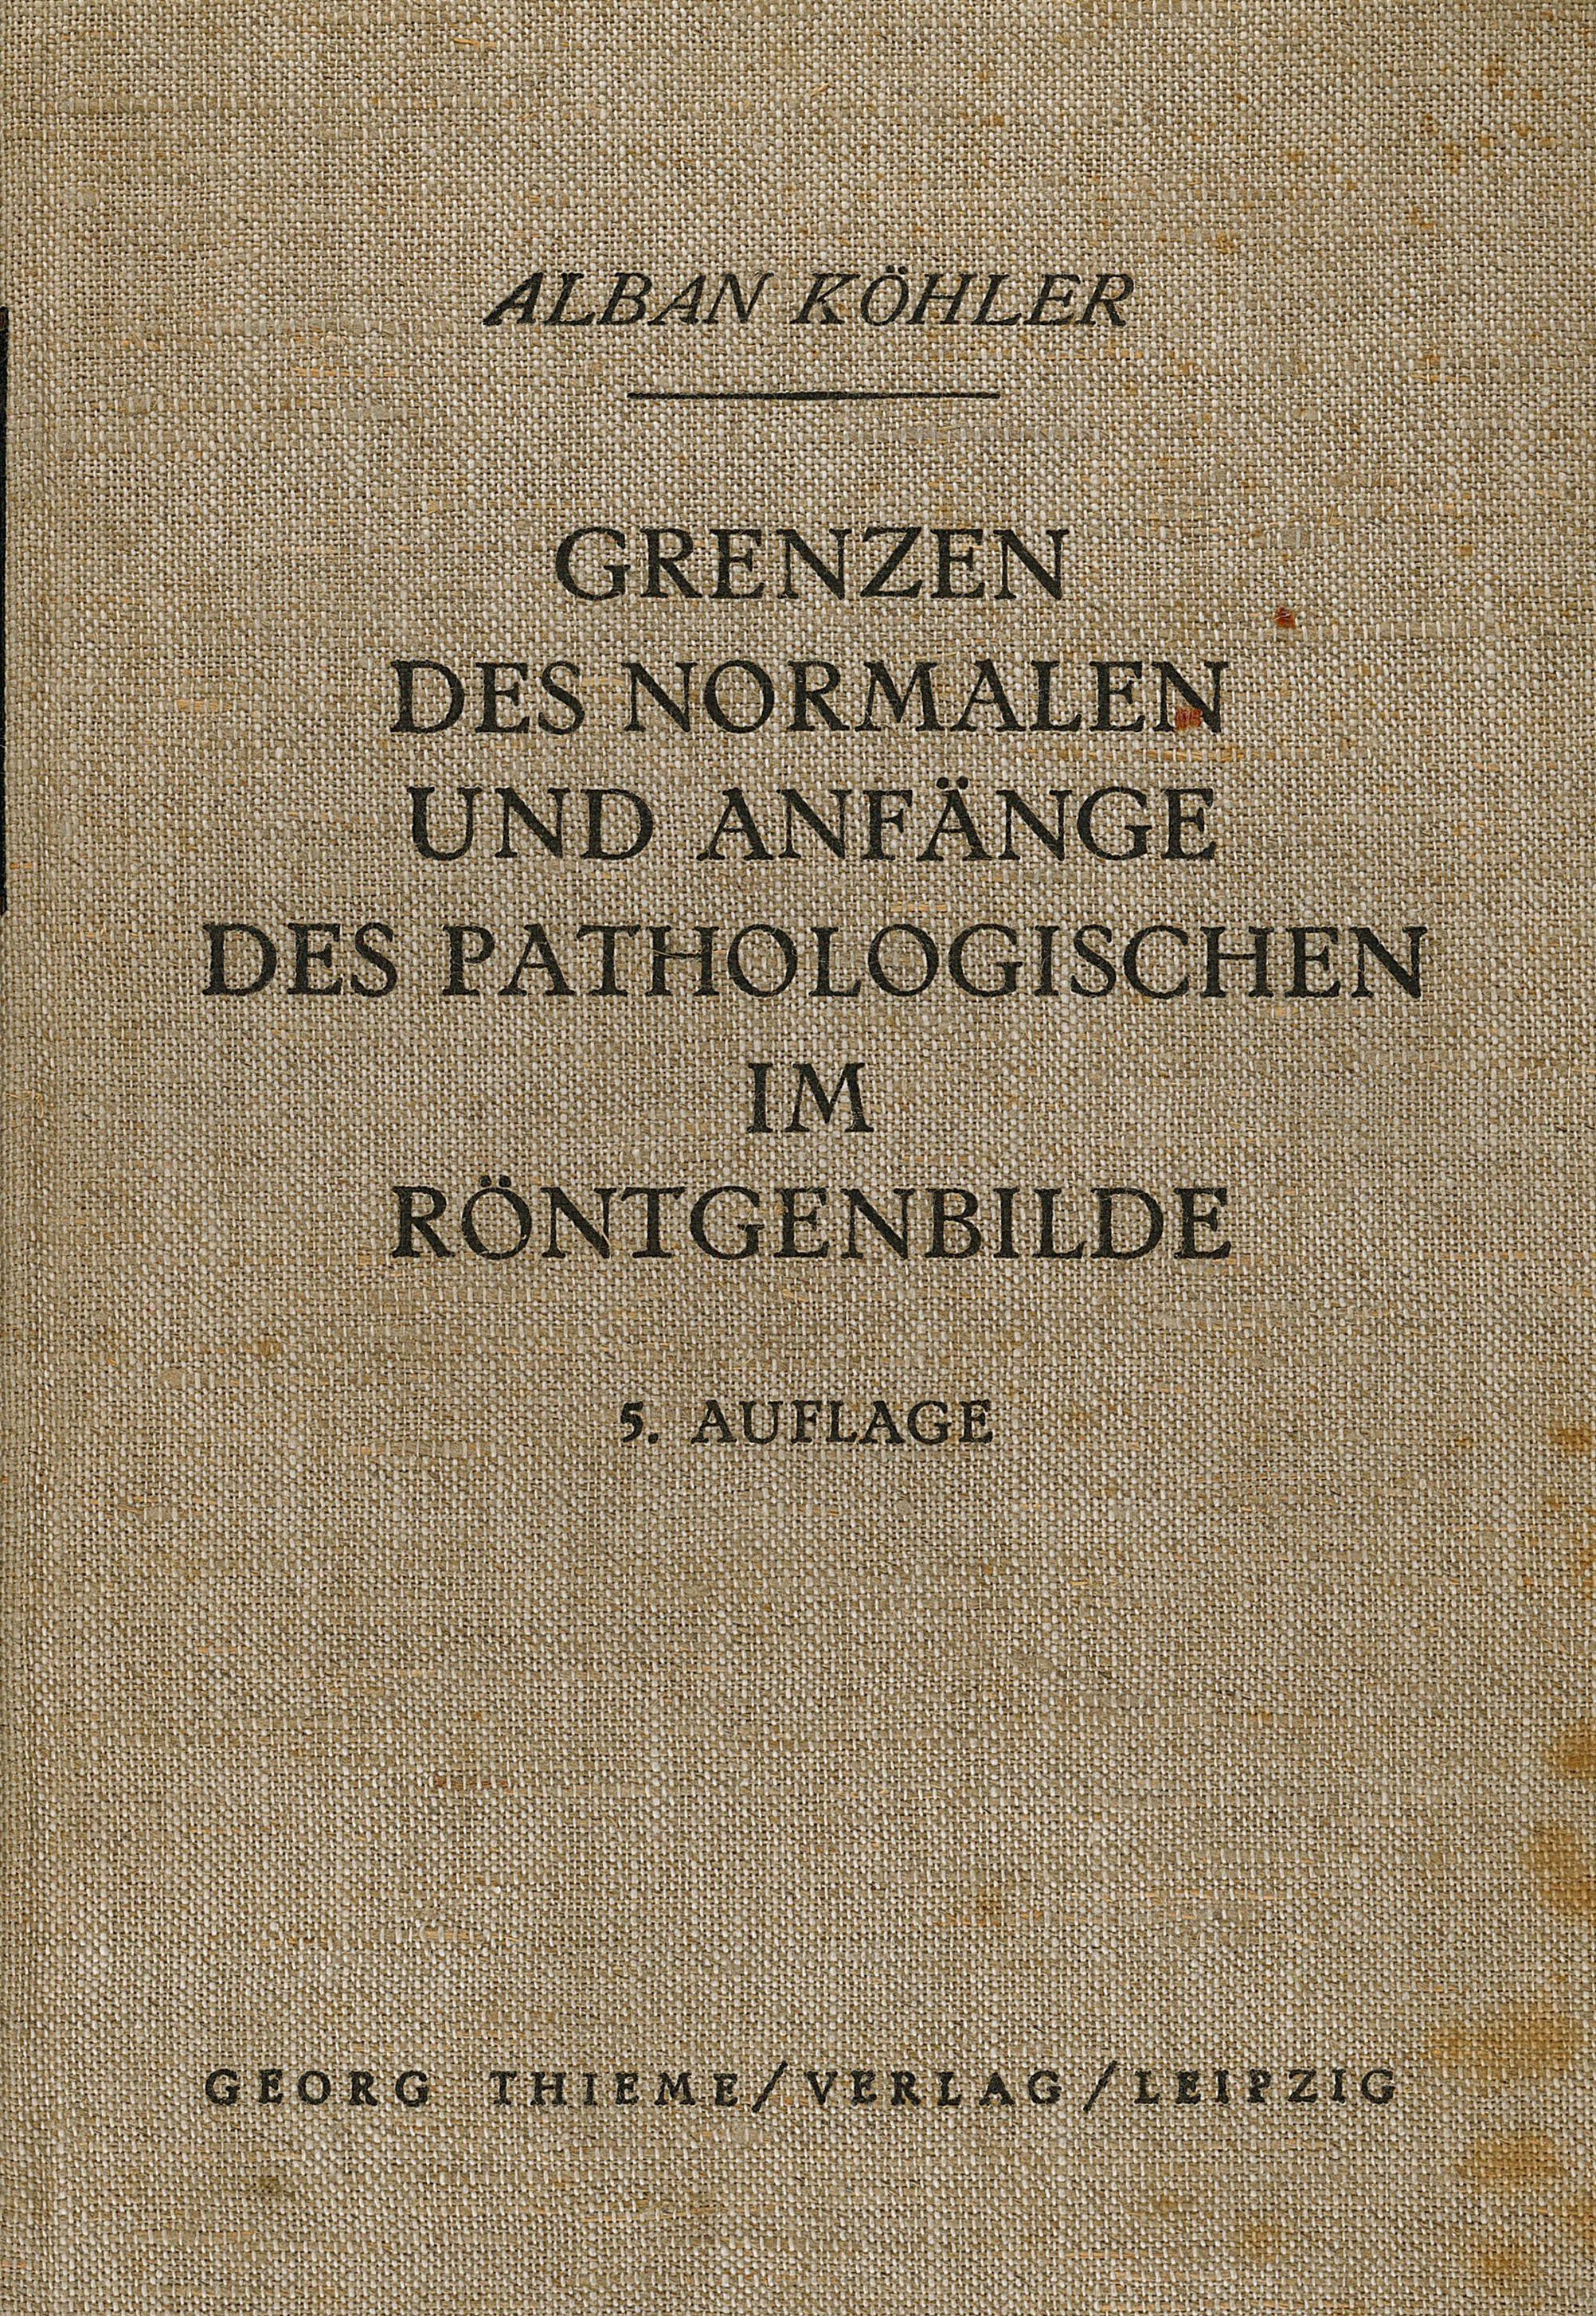 "Grenzen des normalen...Röntgenbilde" (Museum Wolmirstedt RR-F)